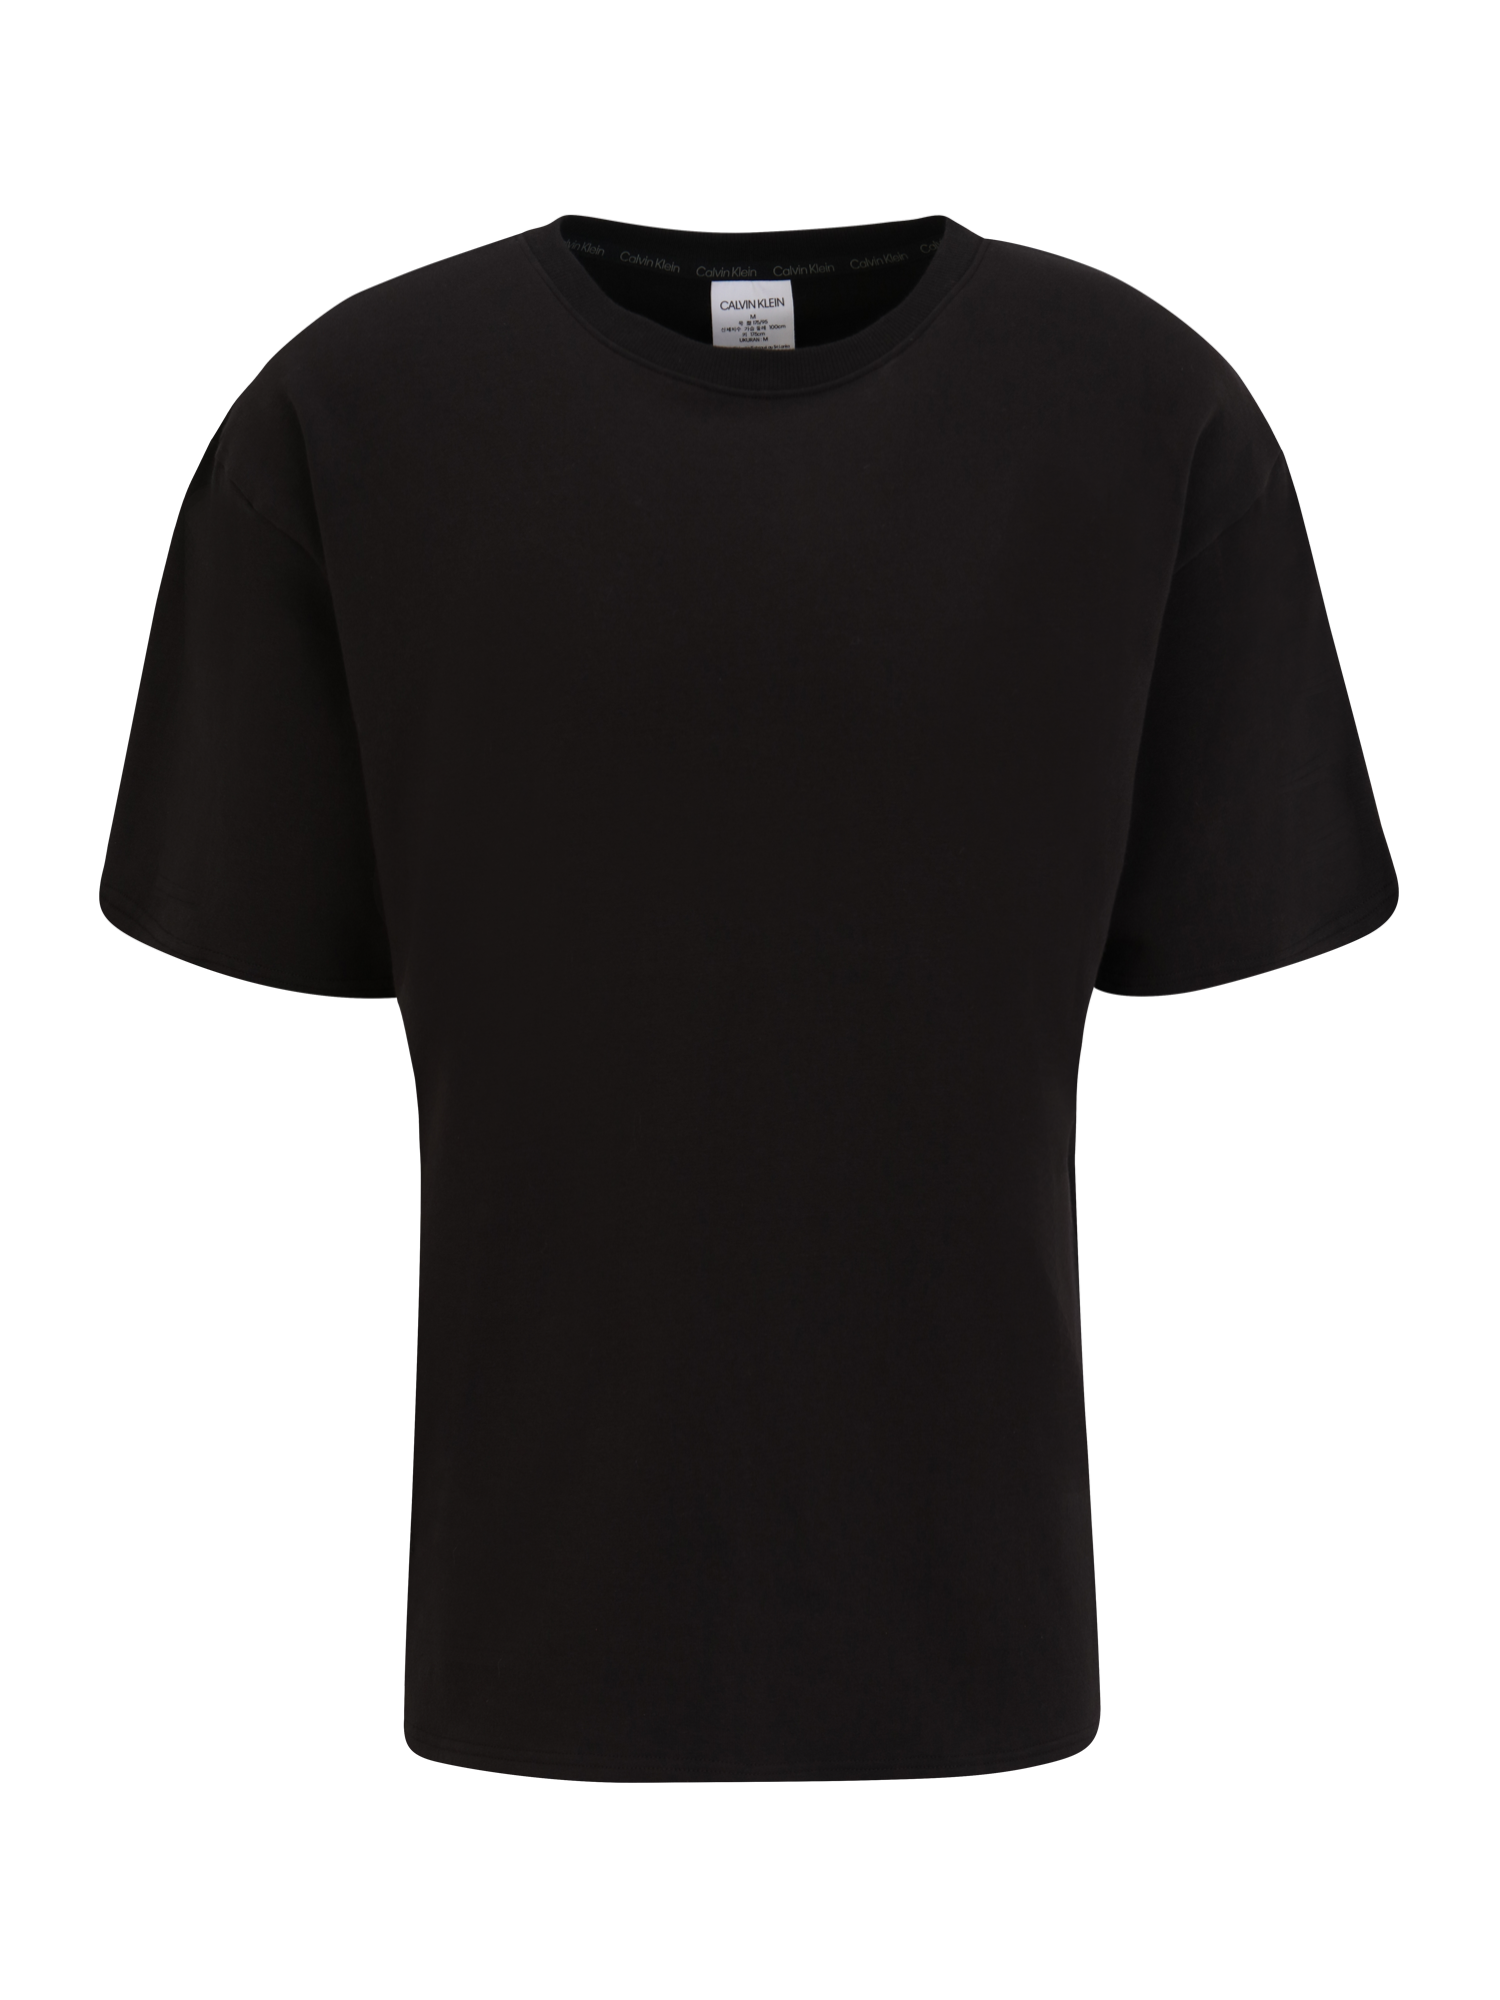 jFhJX Bardziej zrównoważony Calvin Klein Underwear Podkoszulka w kolorze Czarnym 